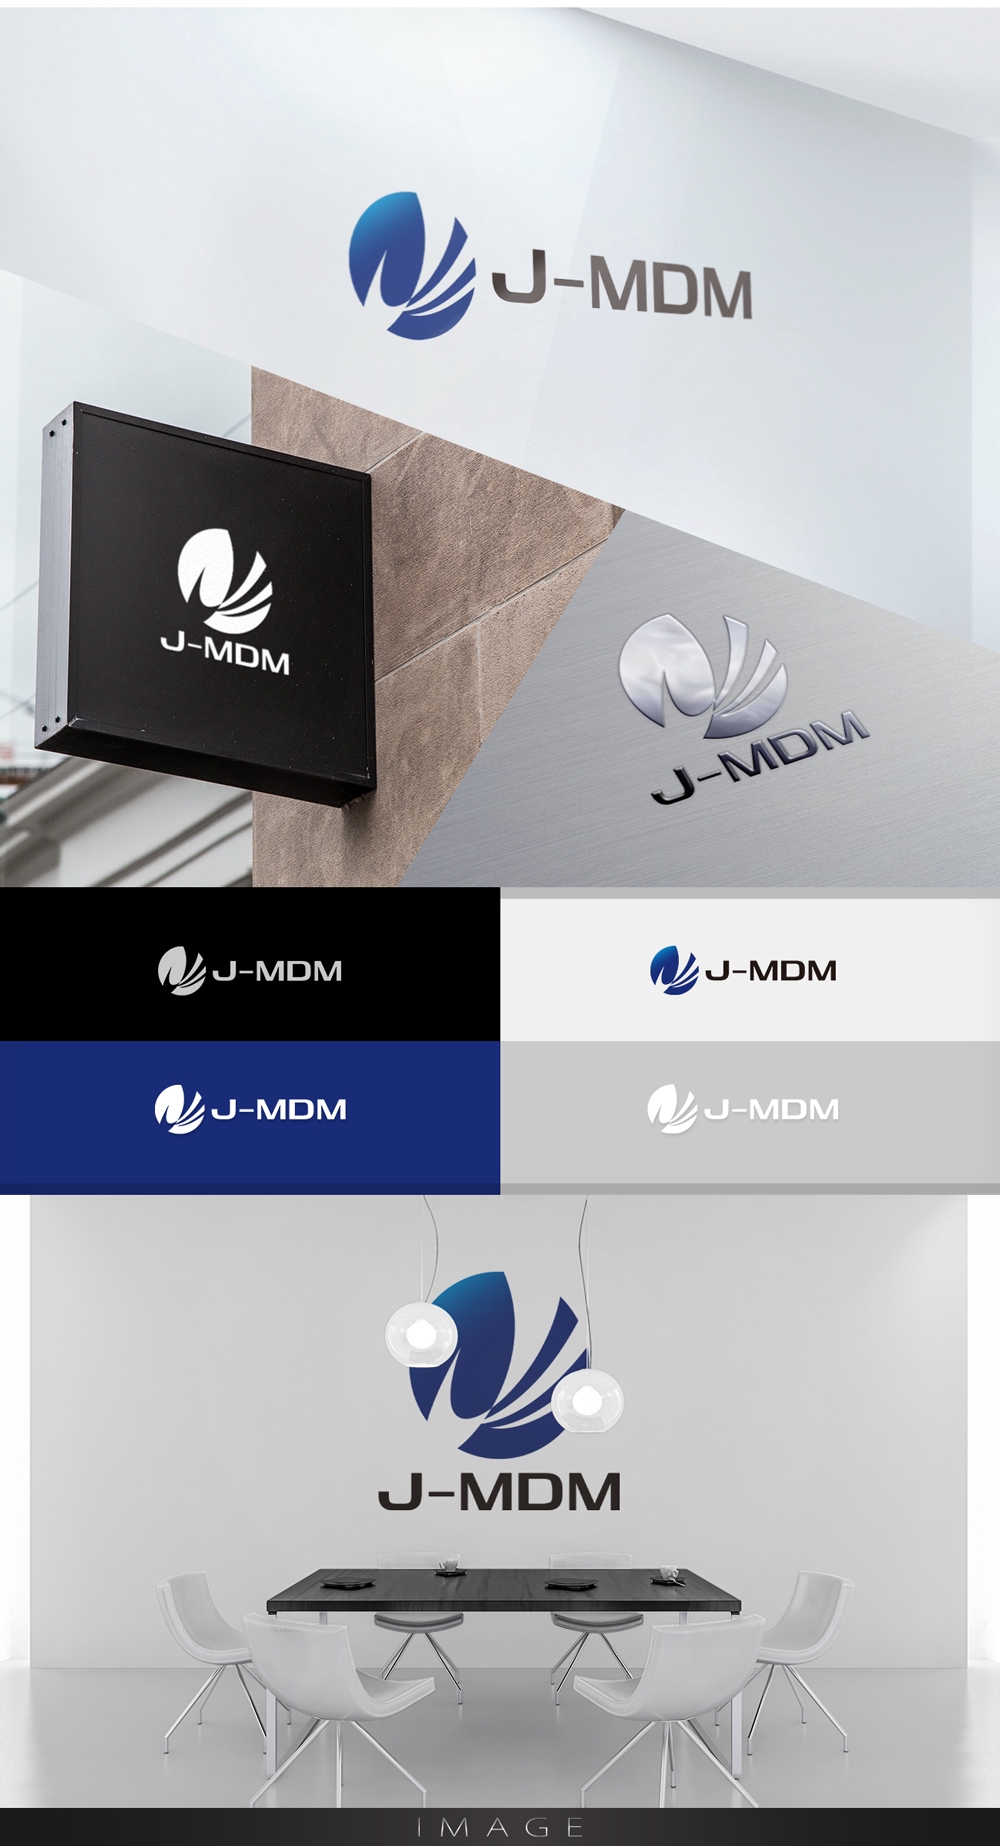 マスターデータ管理ソリューション「J-MDM」のロゴ